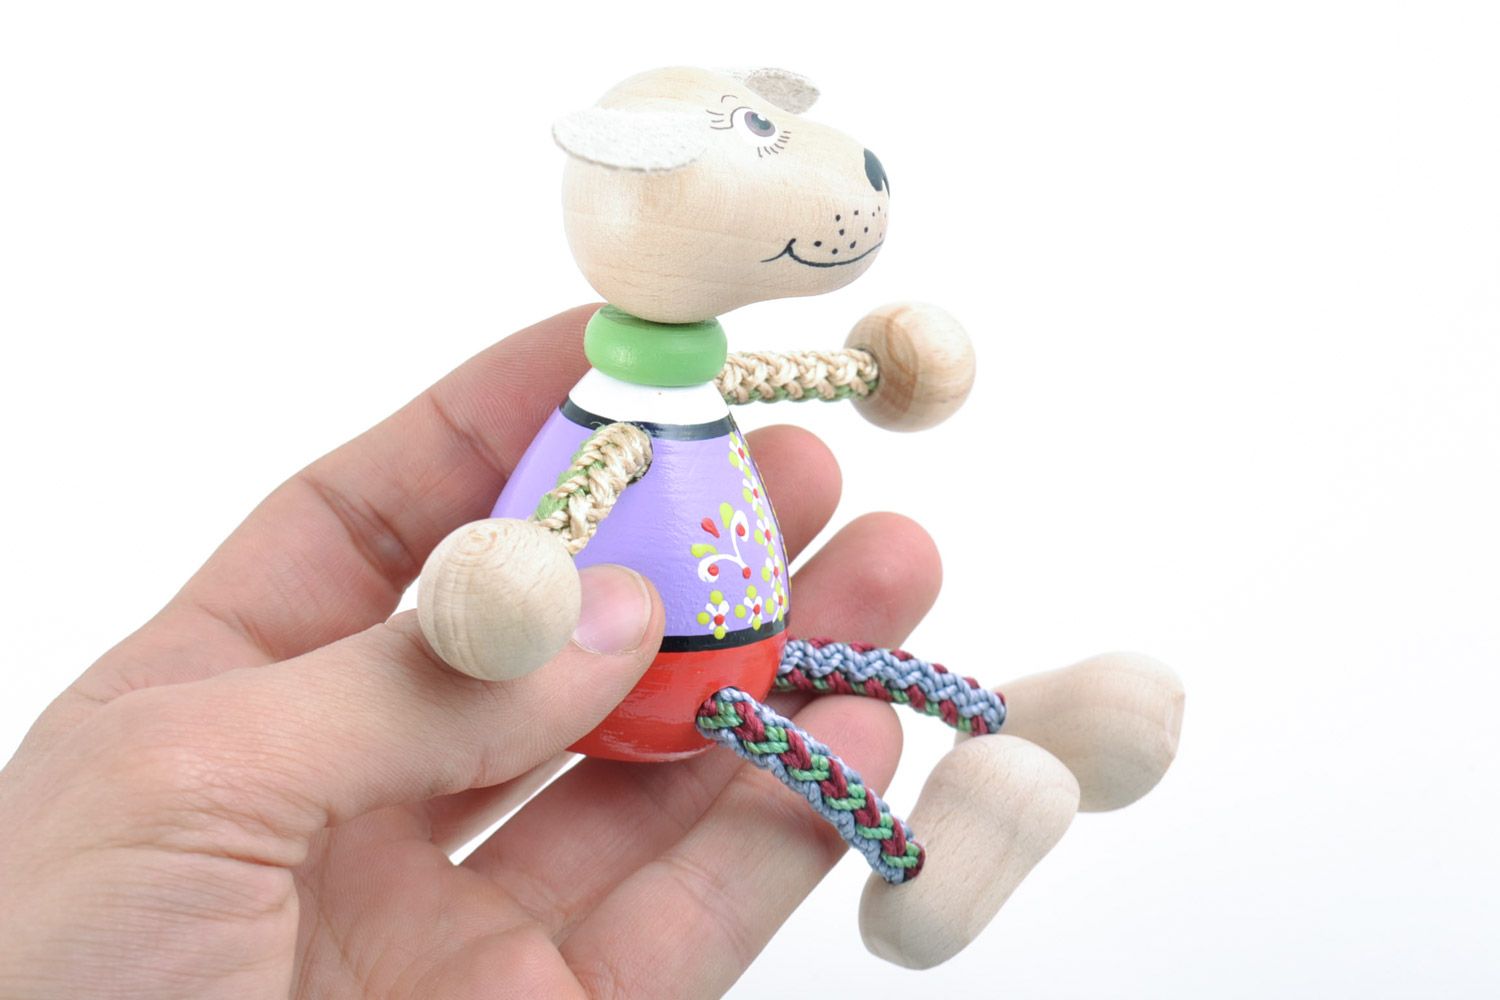 Jouet en bois original fait main peint figurine décorative pour enfant Chien photo 5